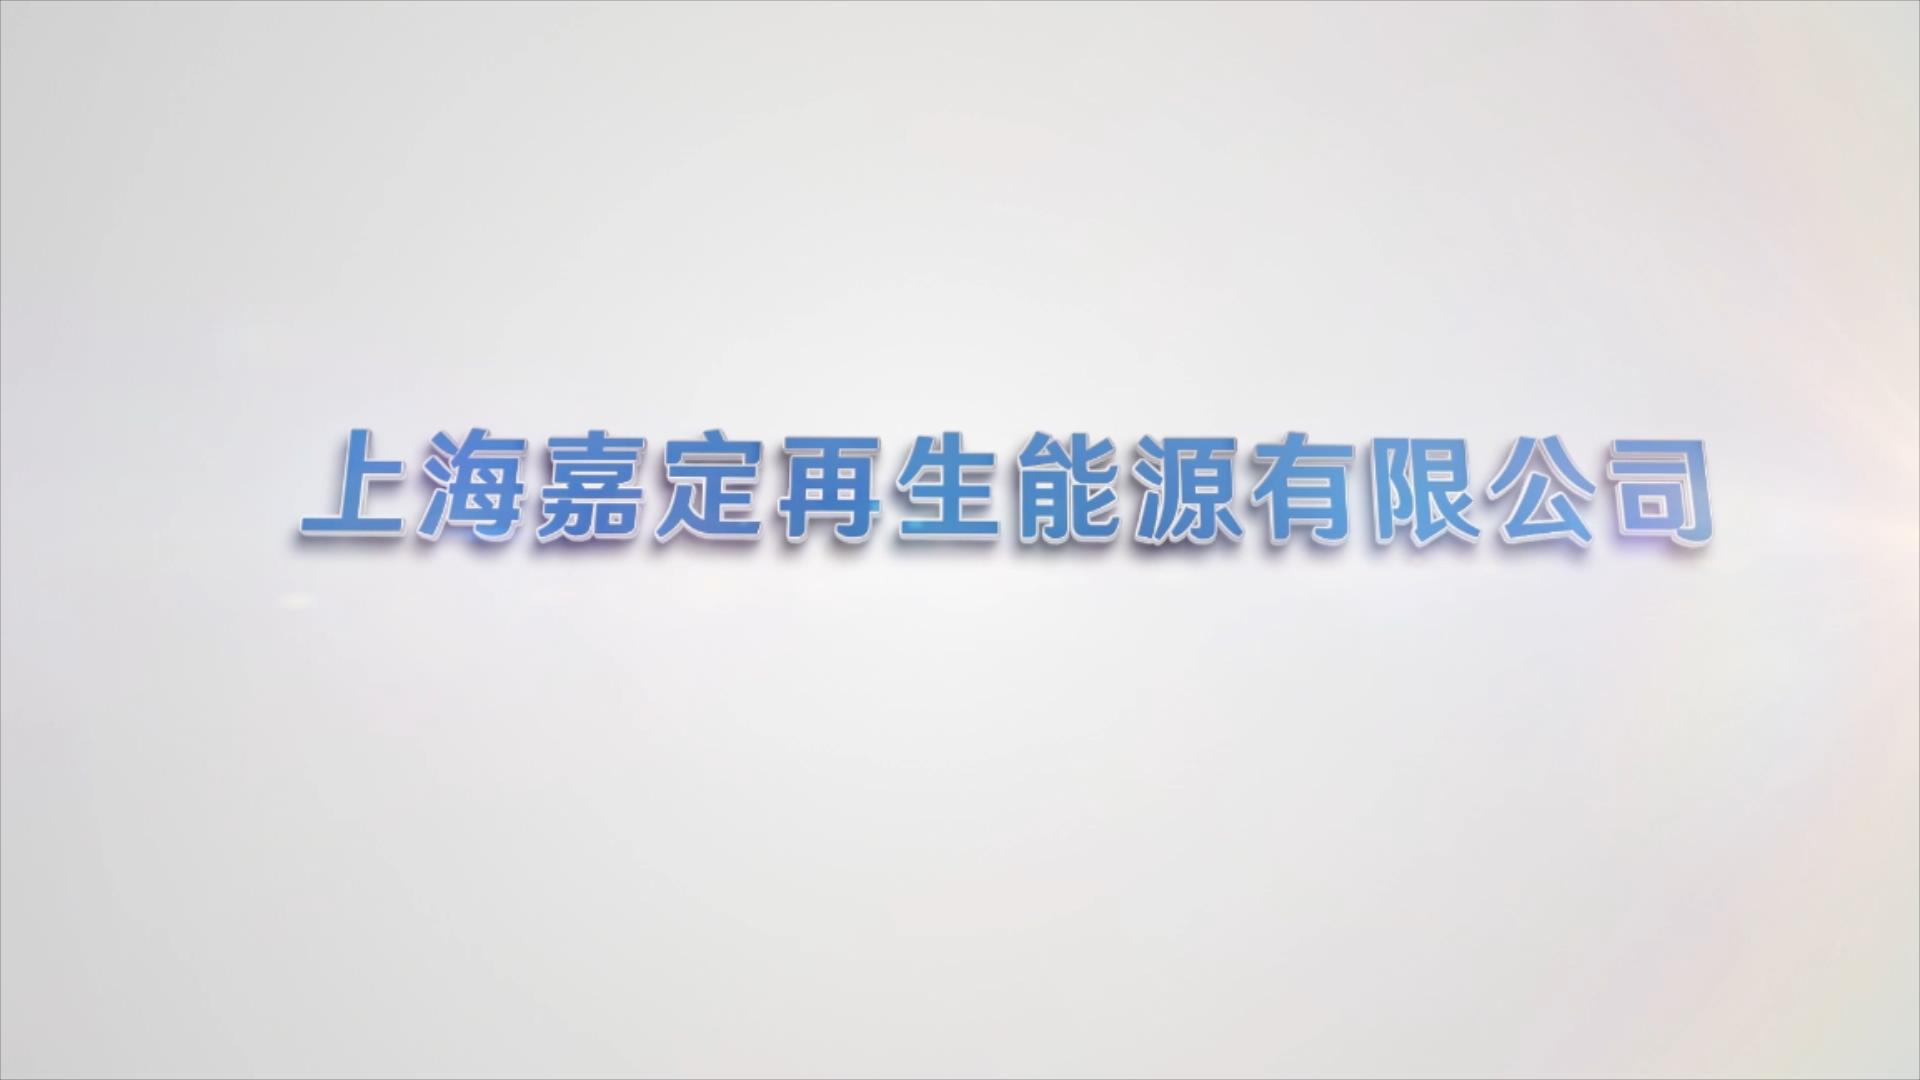 上海嘉定再生源有限公司宣传片